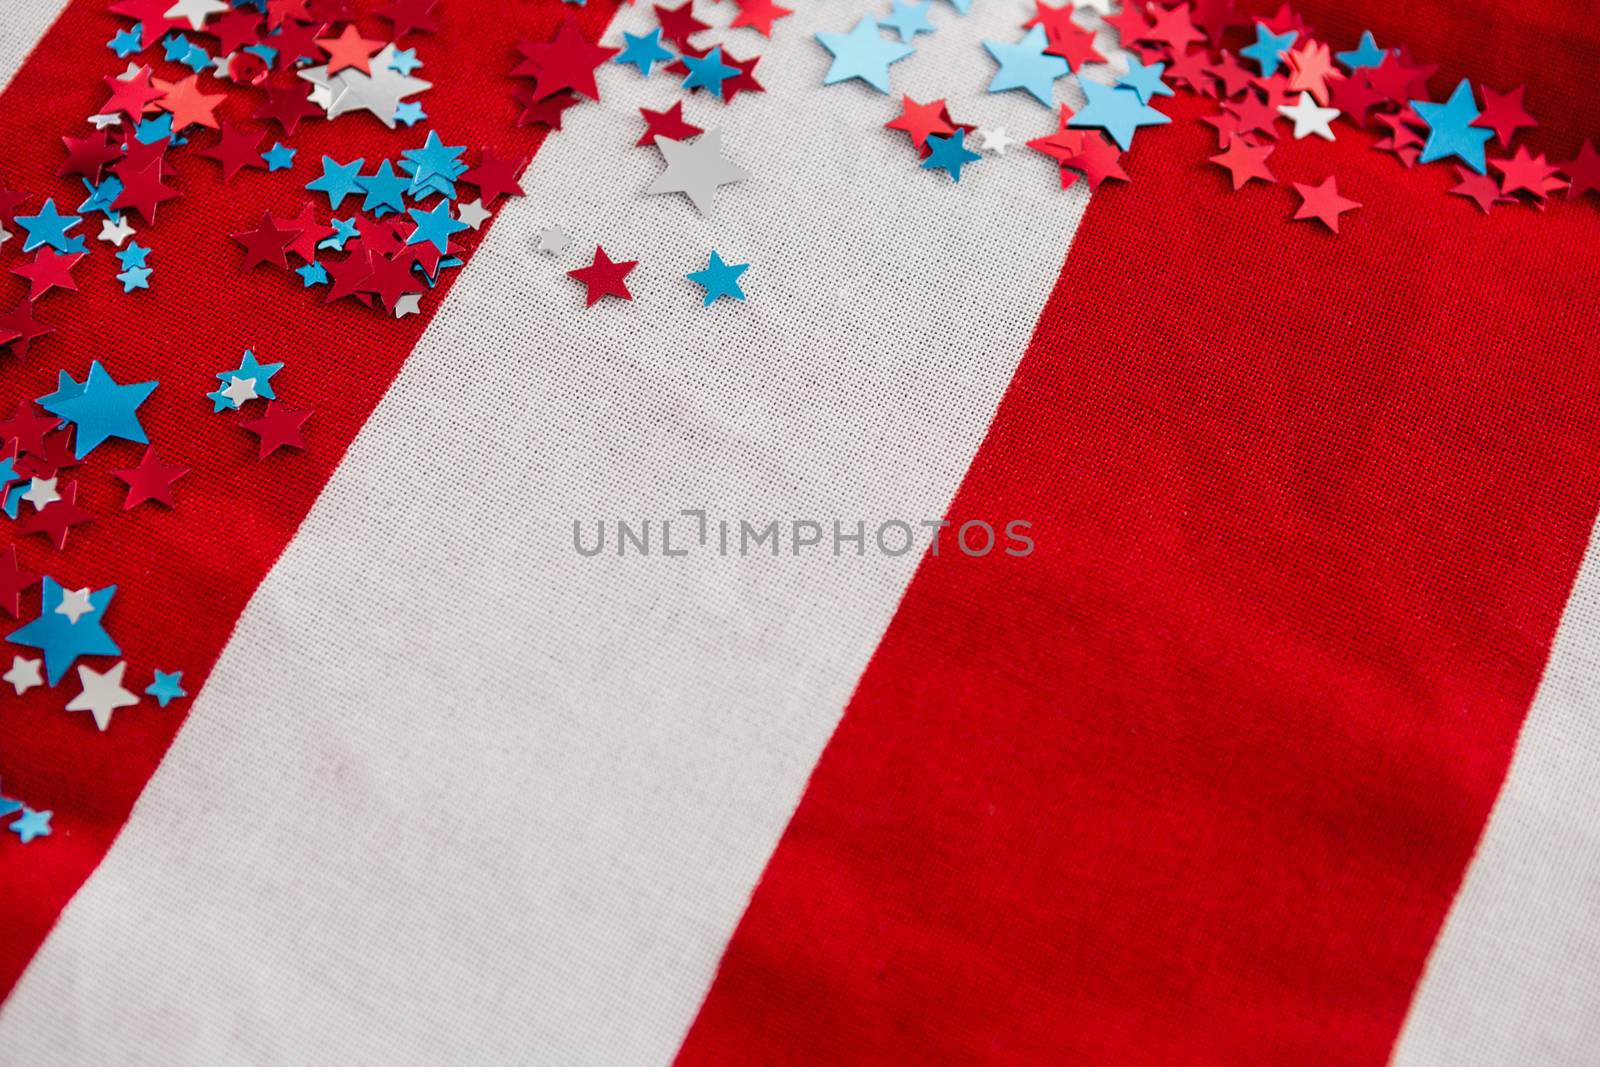 Star shape decoration arranged on American flag by Wavebreakmedia